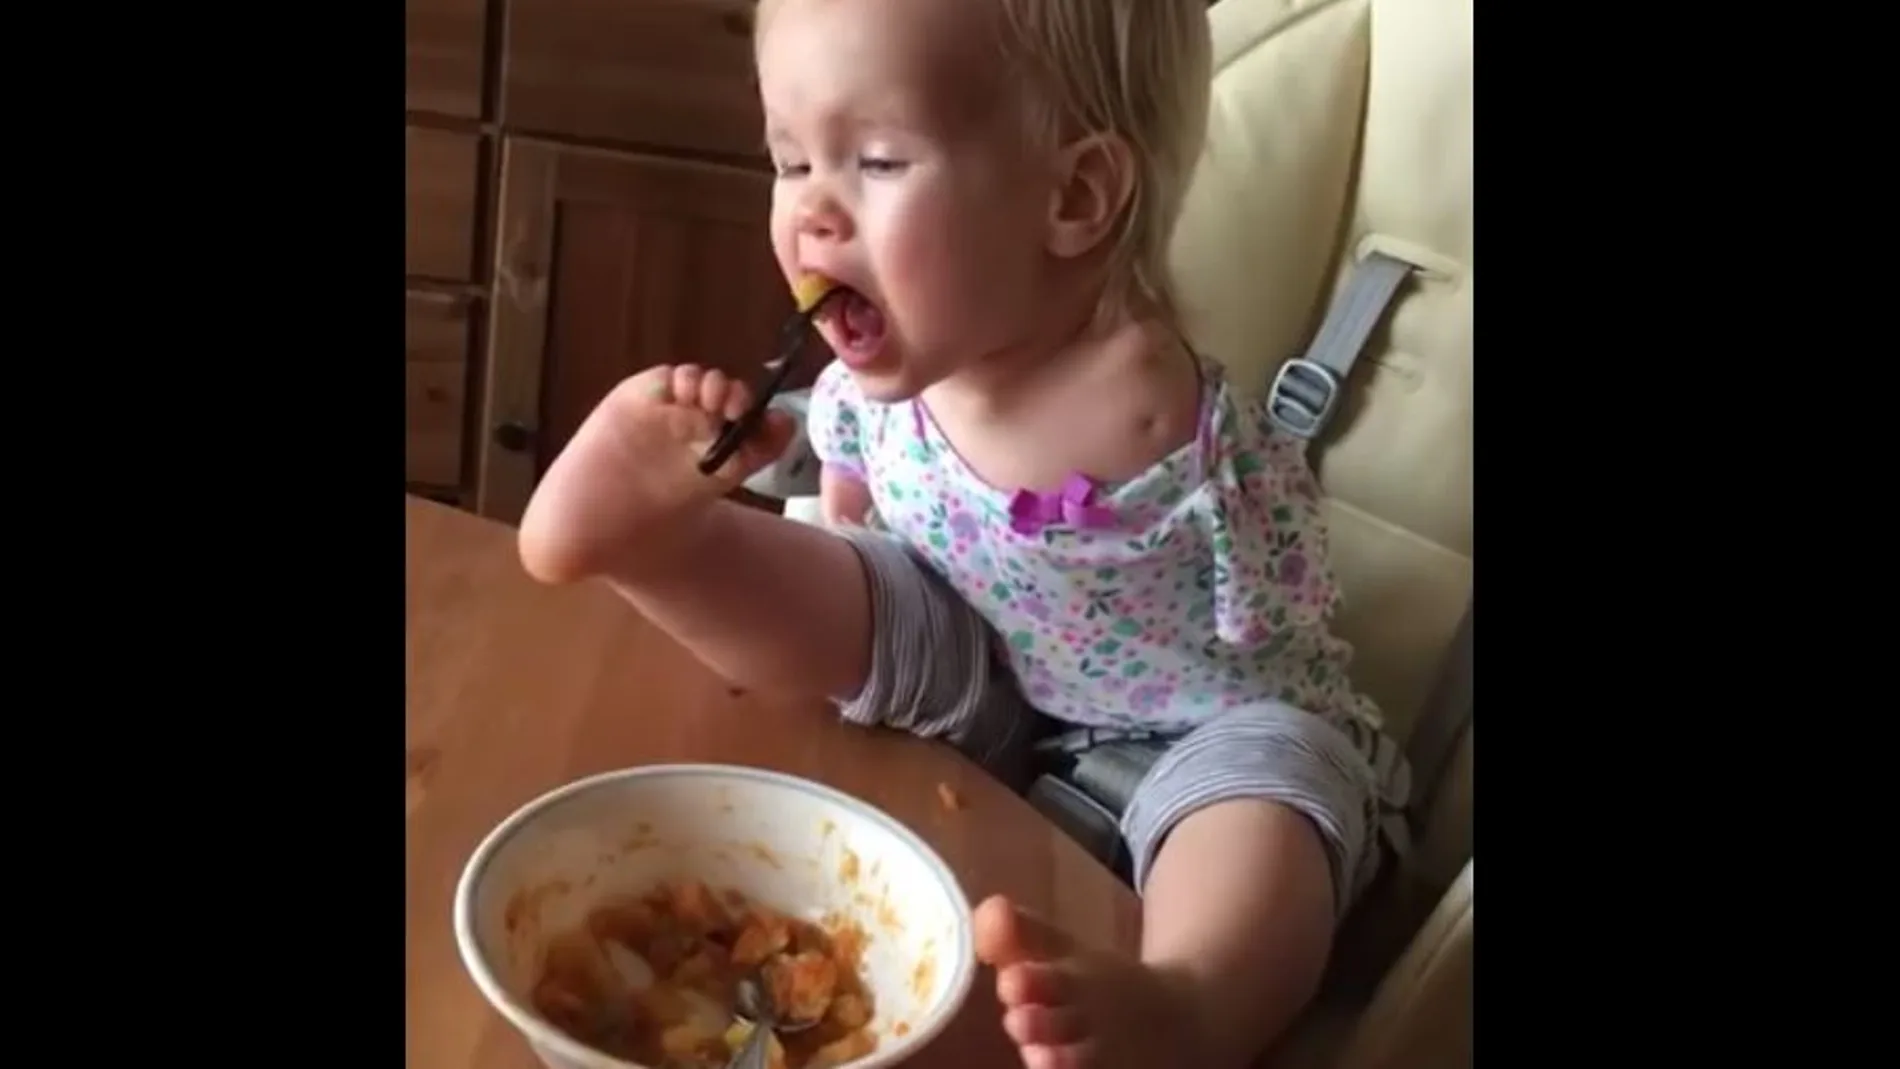 El inspirador vídeo de una niña alimentándose con los pies arrasa en las redes sociales